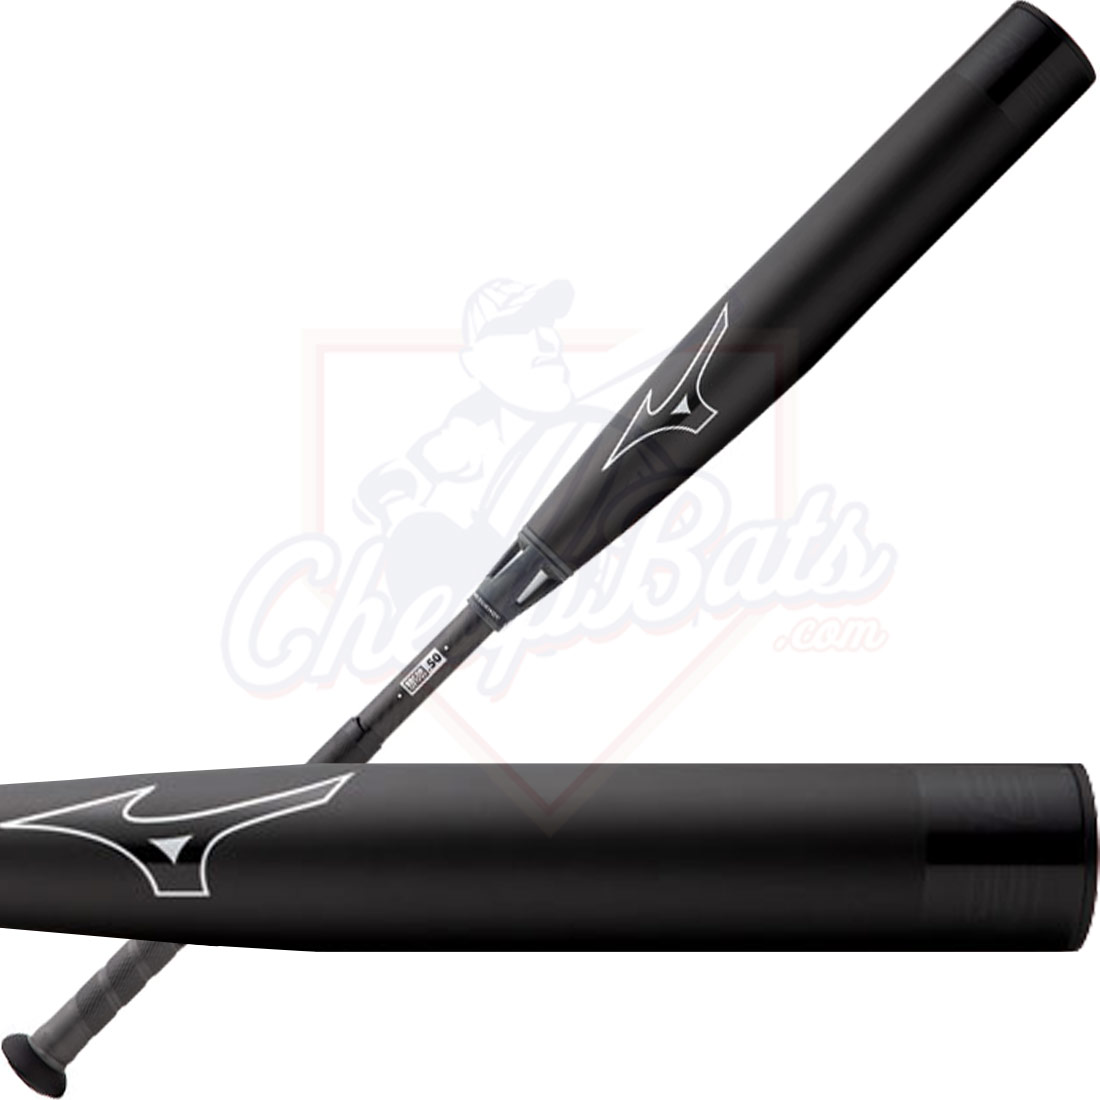 2021 Mizuno B21 Power Carbon BBCOR Baseball Bat -3oz 340559